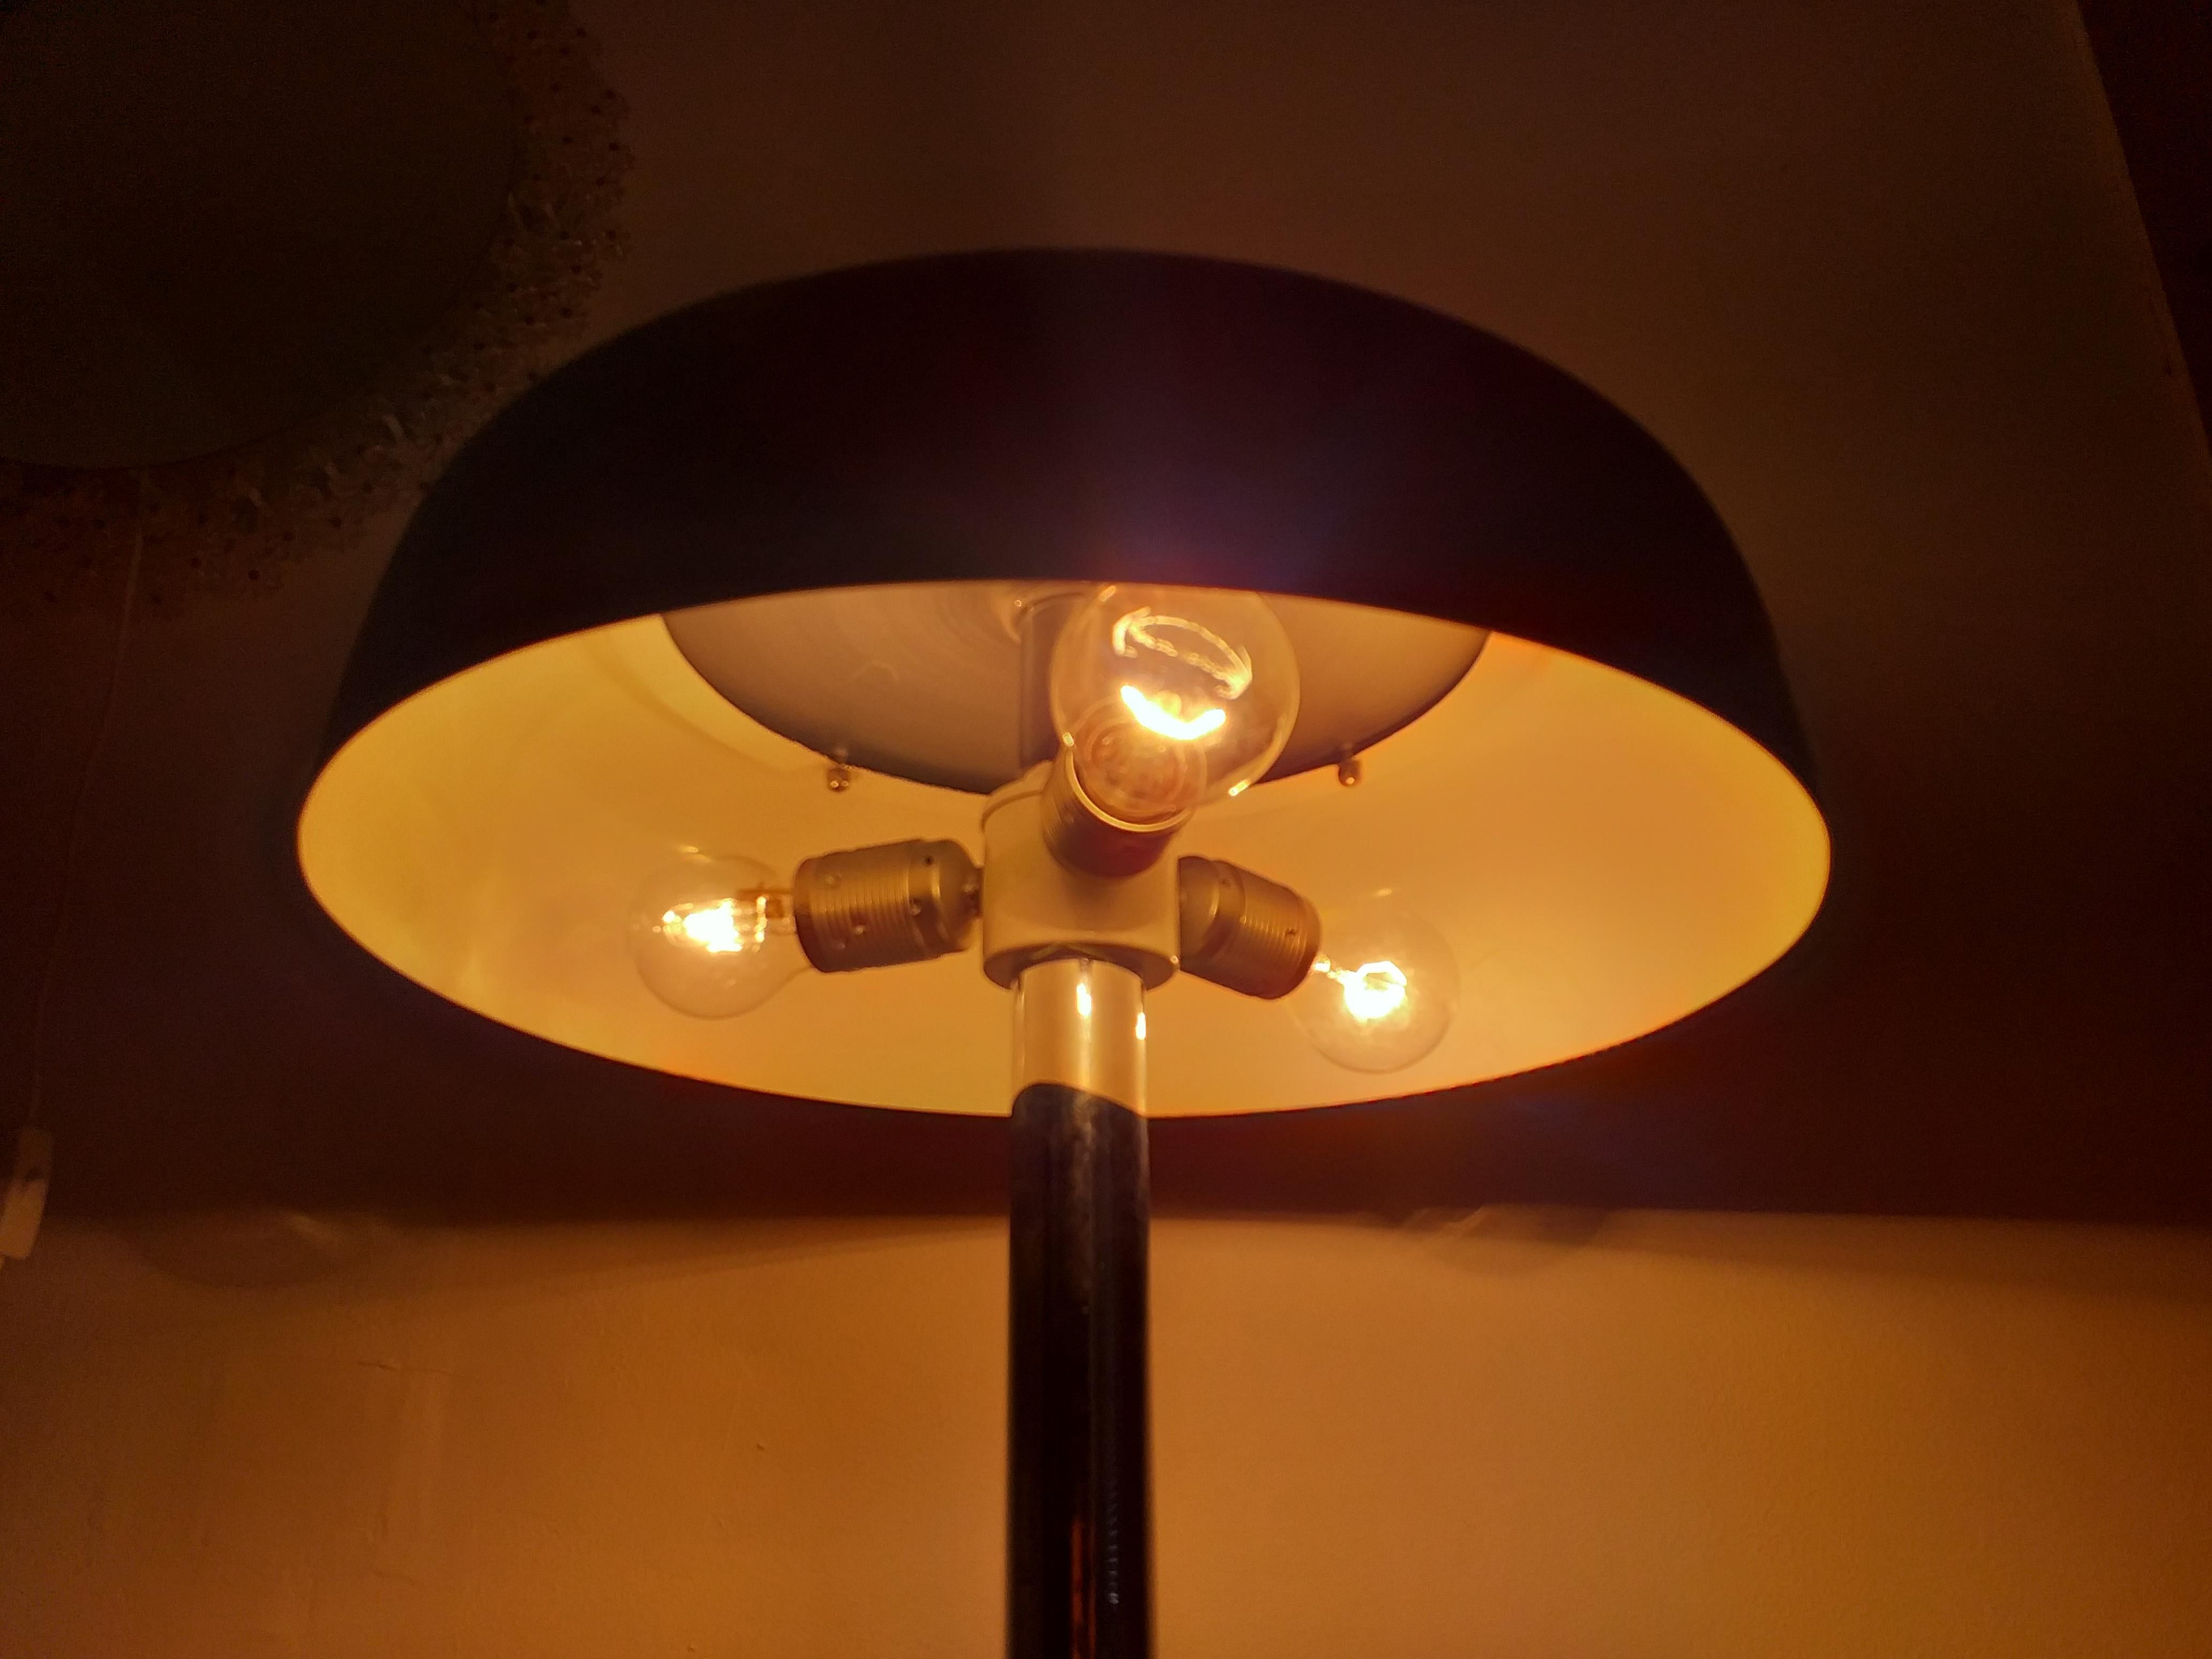 Big Midcentury Table Lamp, Mushroom, Hillebrand, 1970s 1